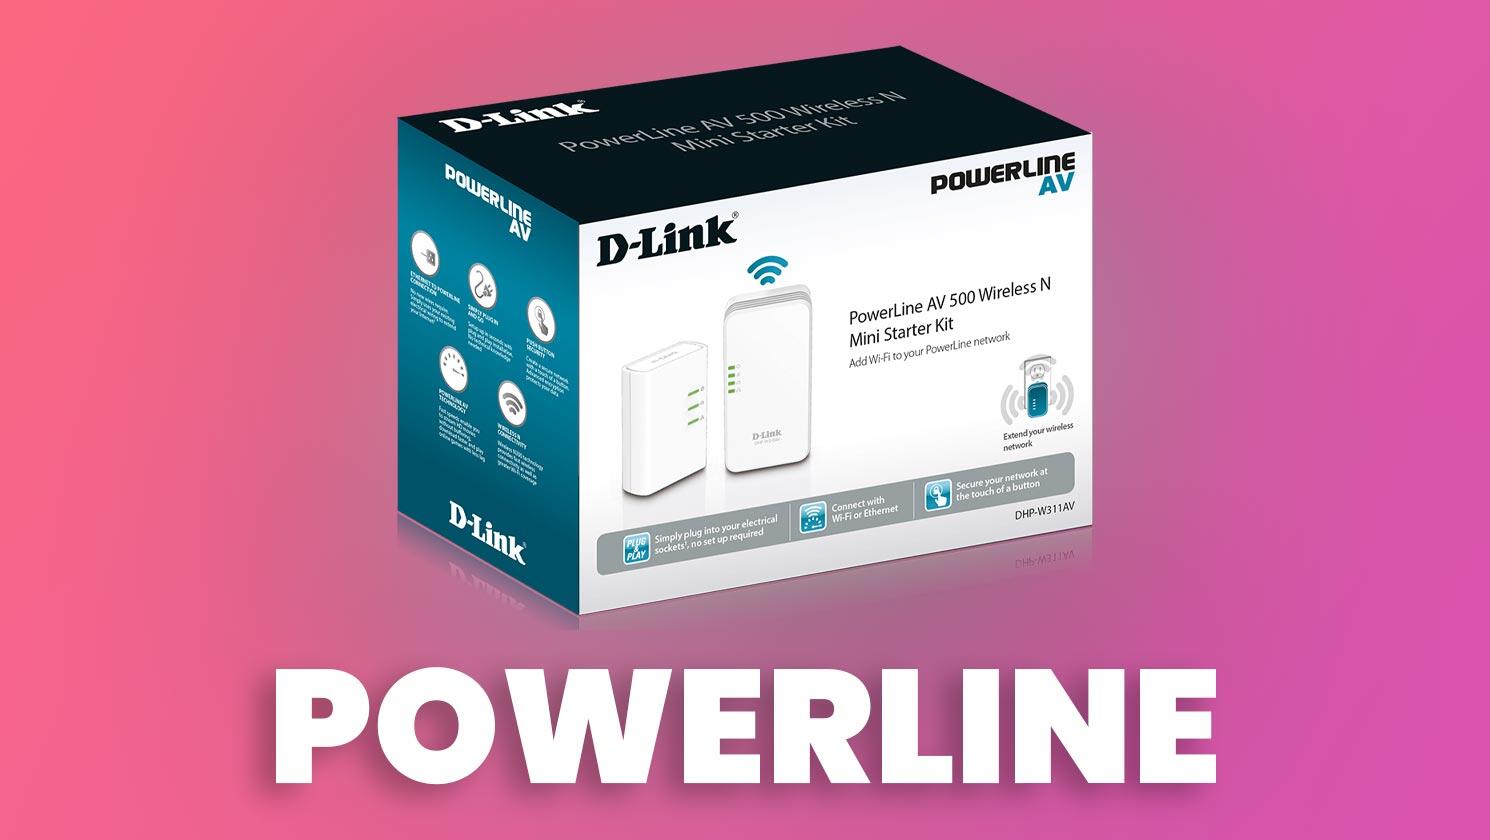 Powerline D-Link